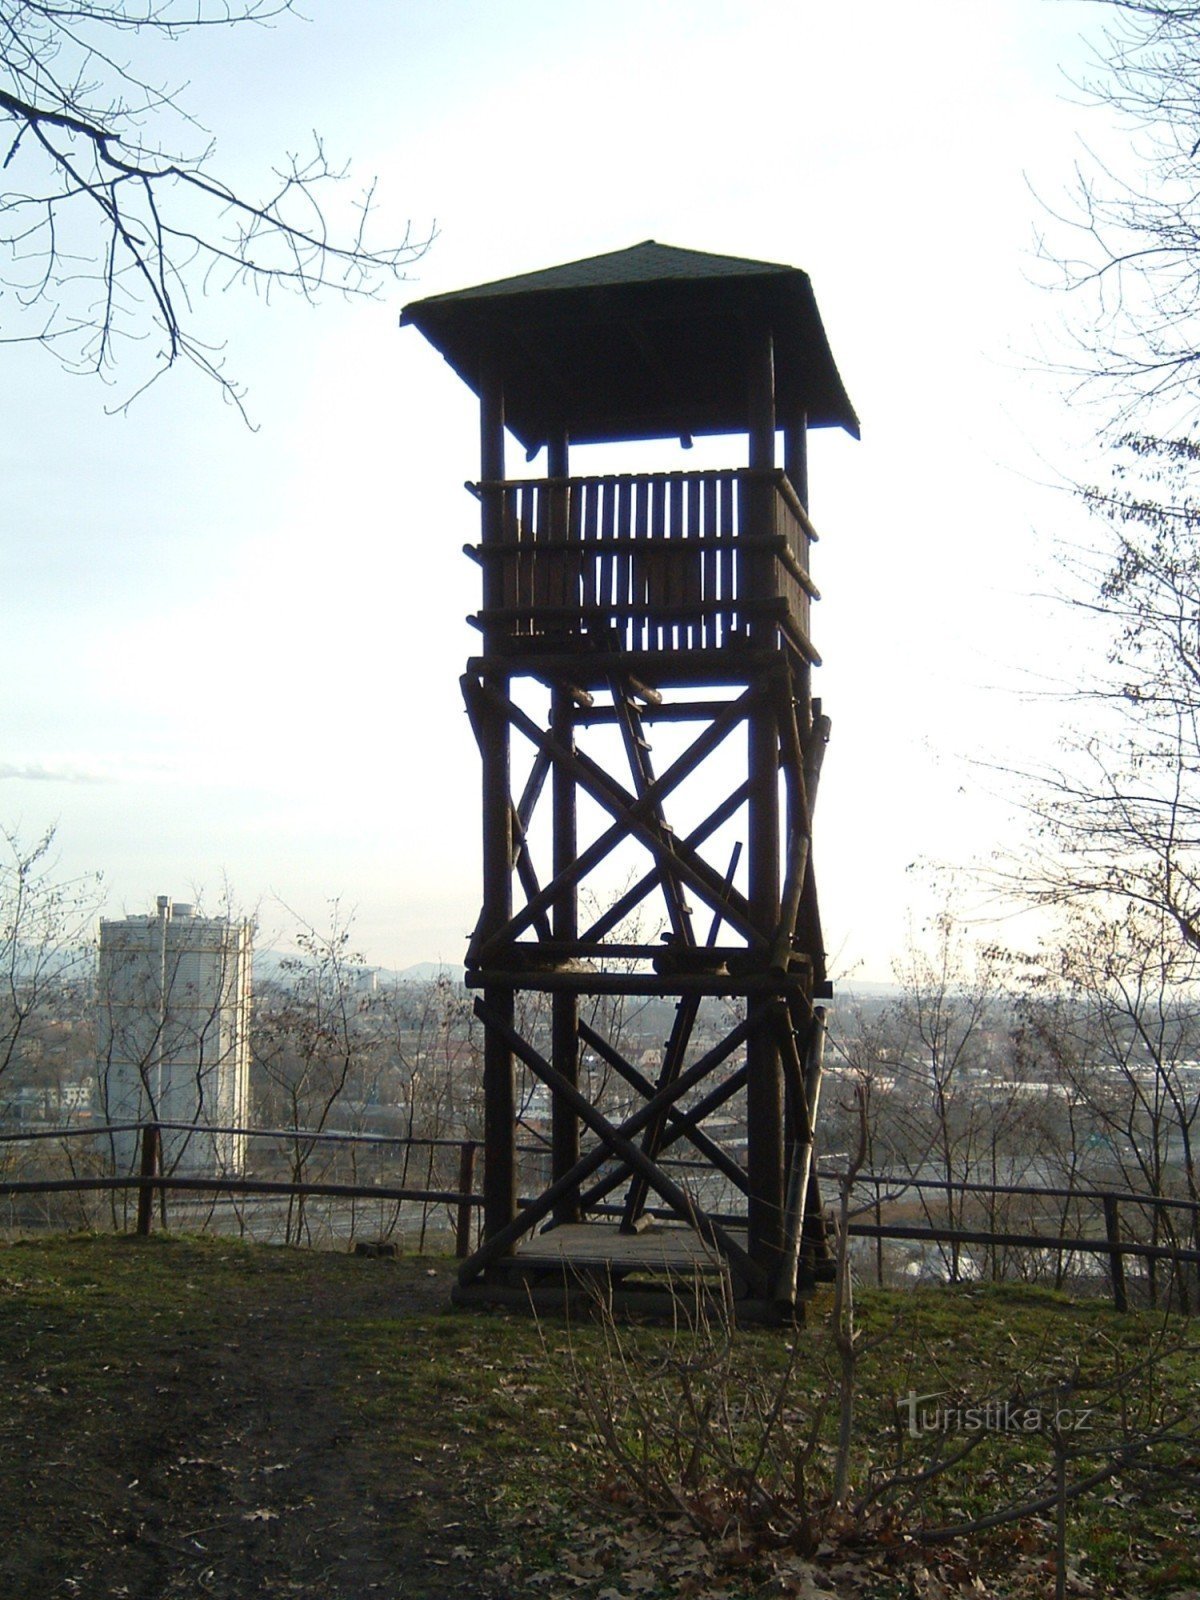 Landek - observation tower